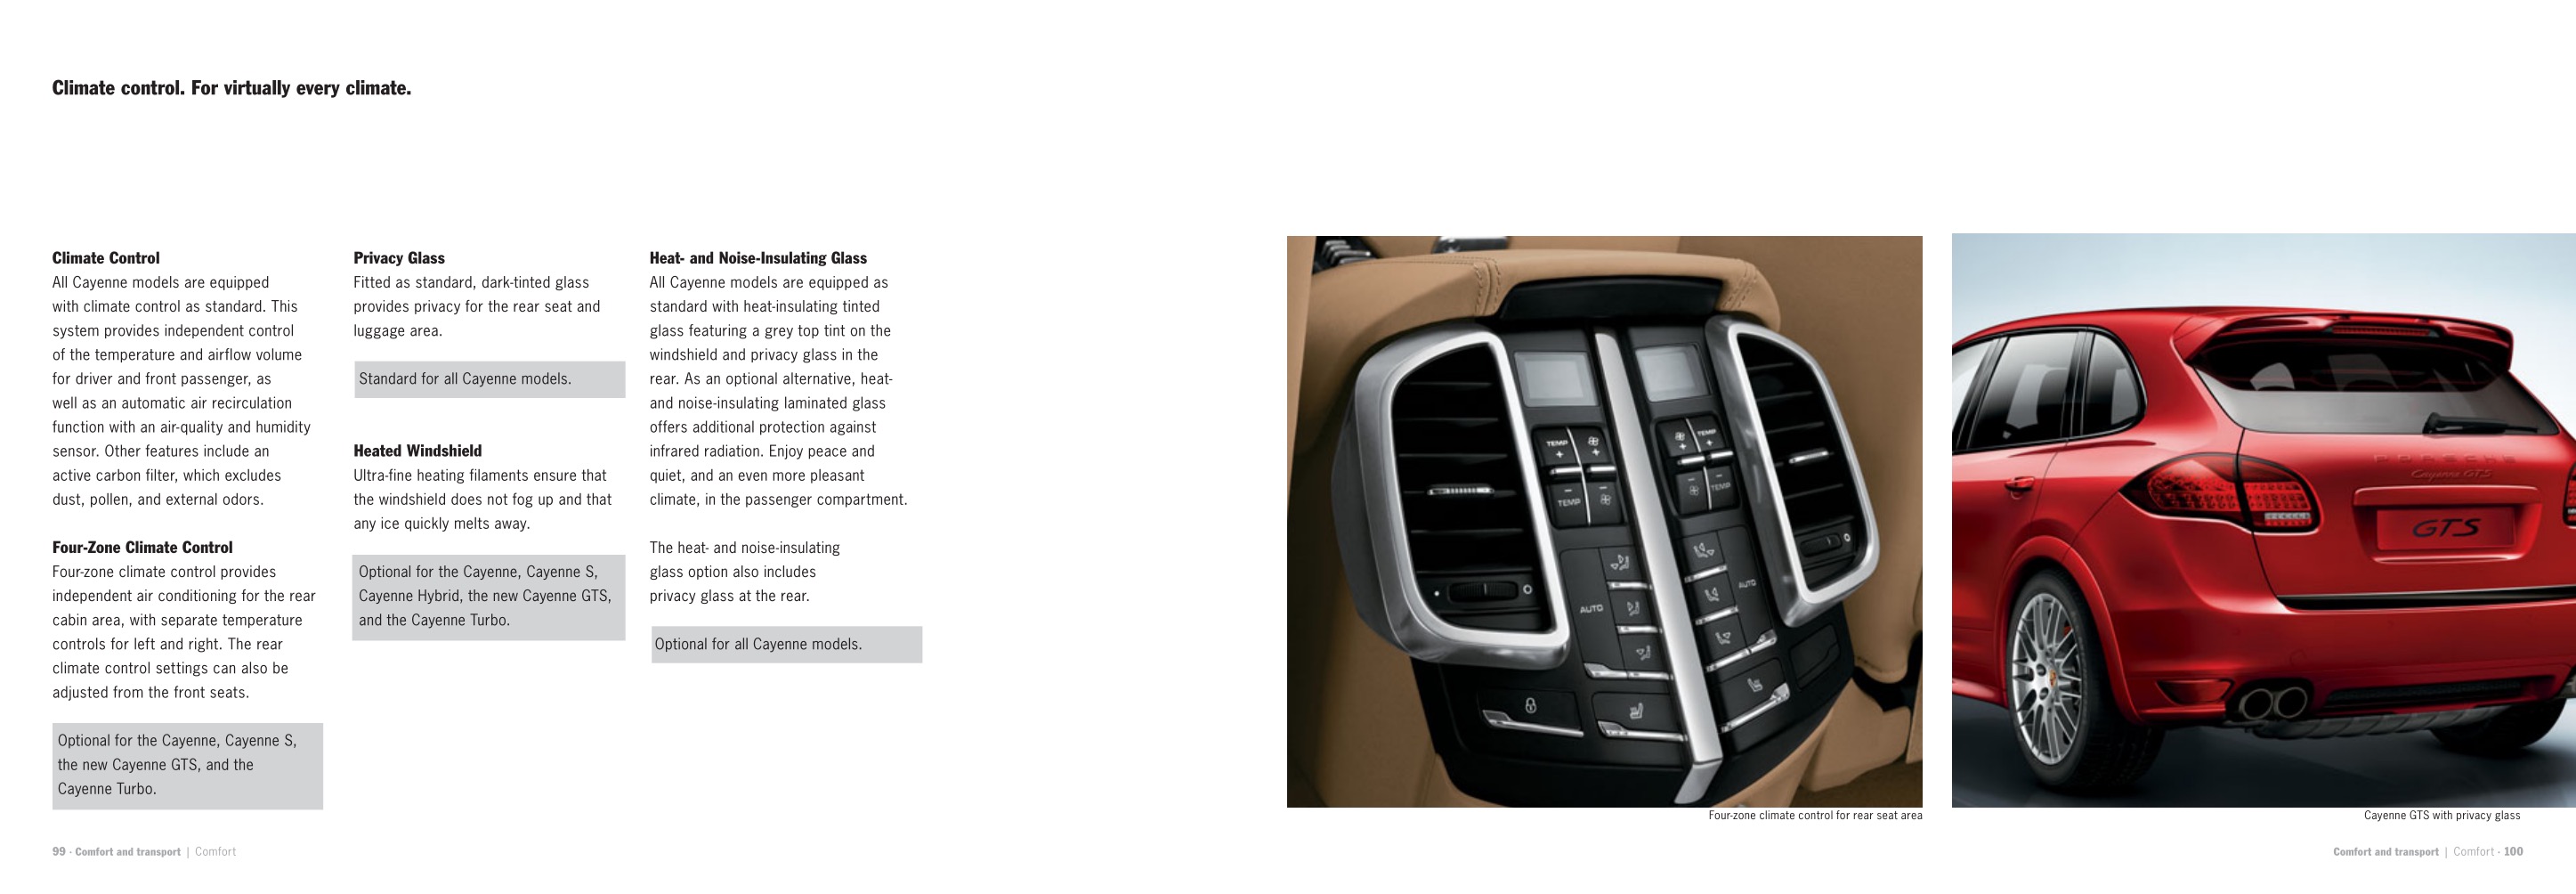 2013 Porsche Cayenne Brochure Page 21